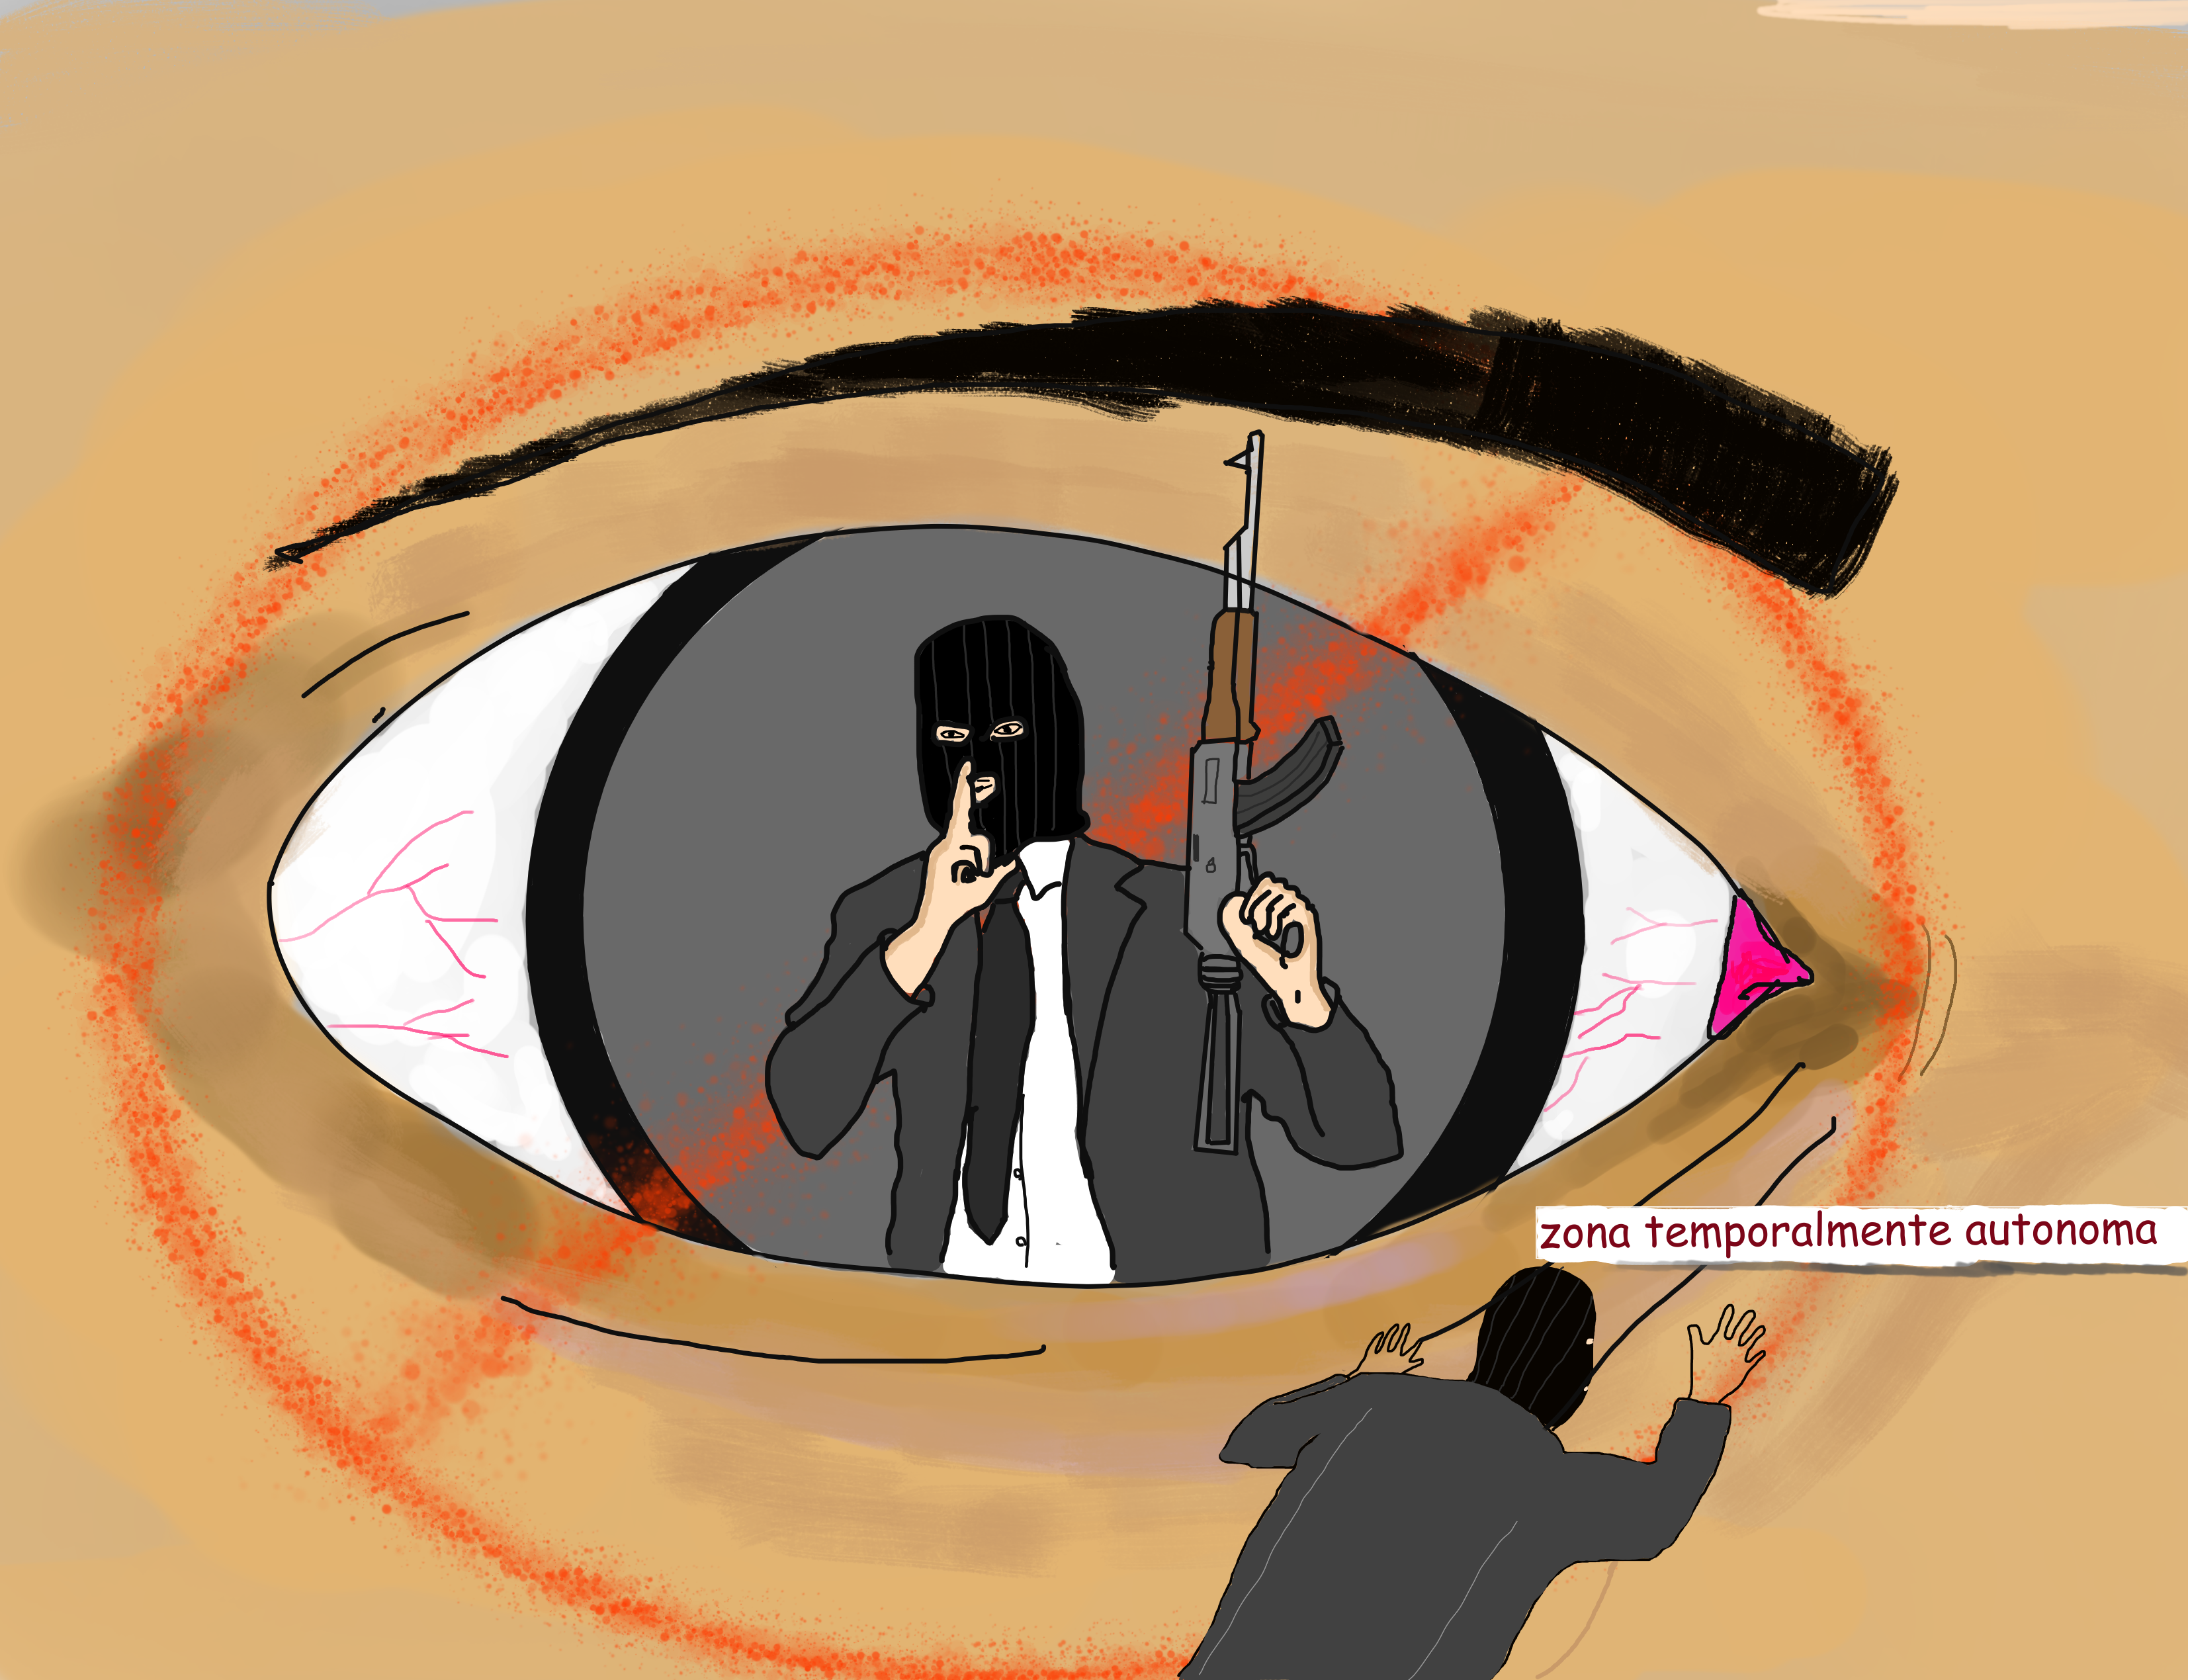 imagen donde se expresa la censura, un ojo con terroristas, referenciando a las zonas temporalmente autonomas de focault